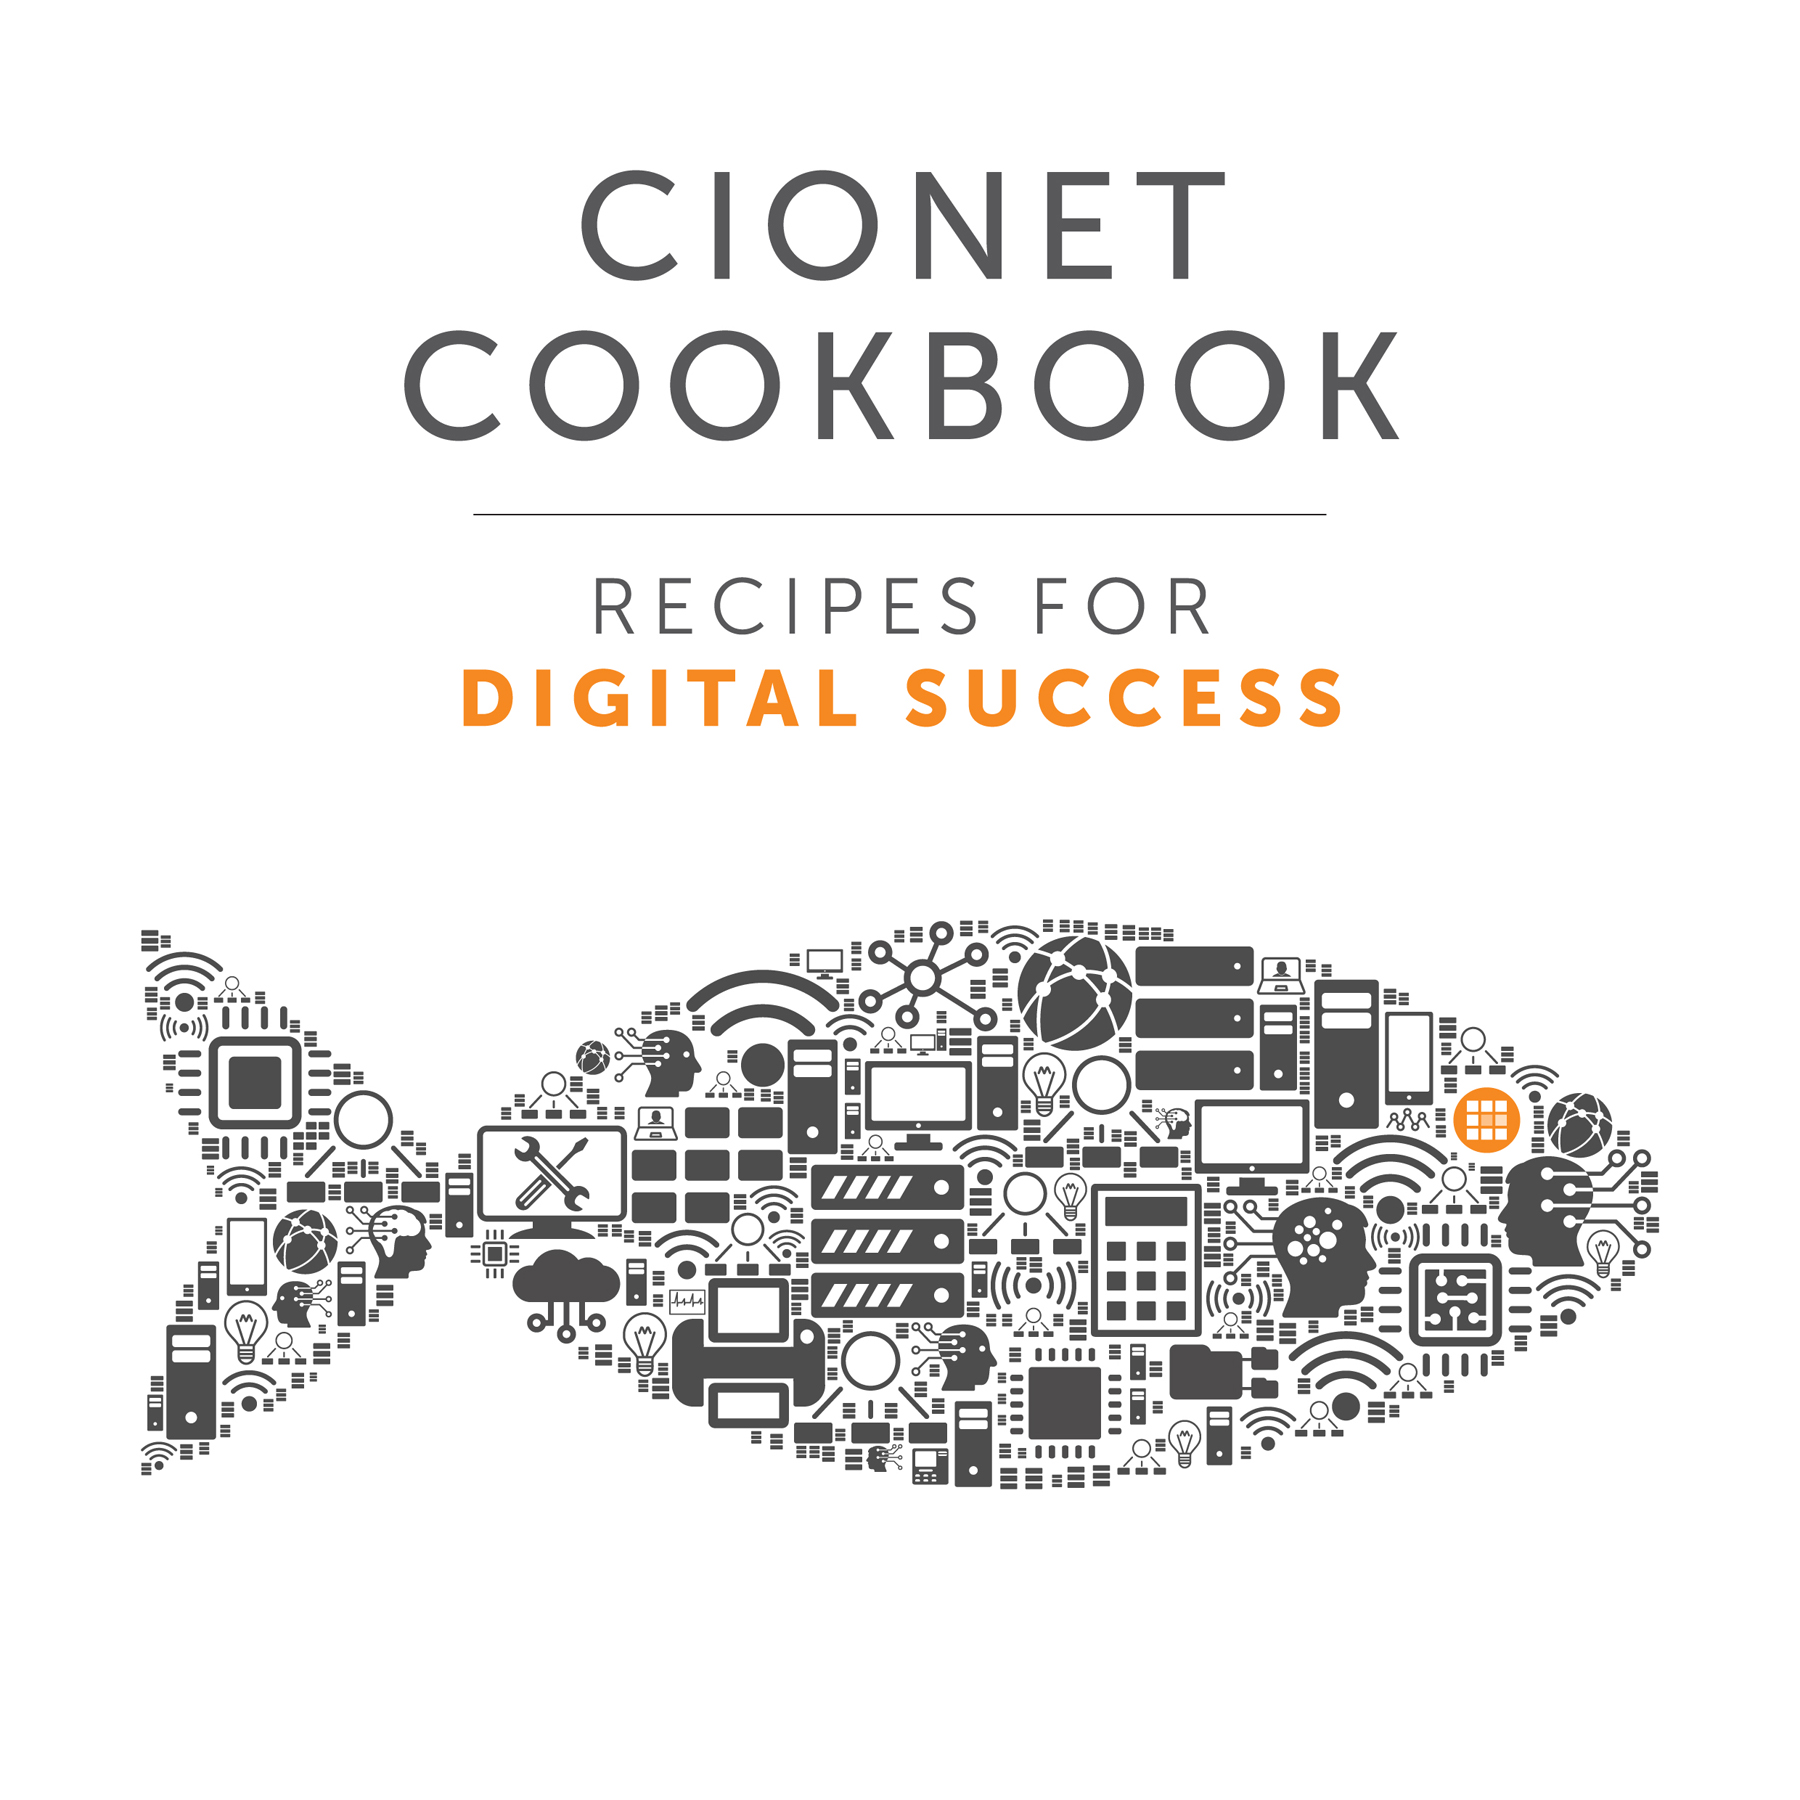 CIONET Cookbook